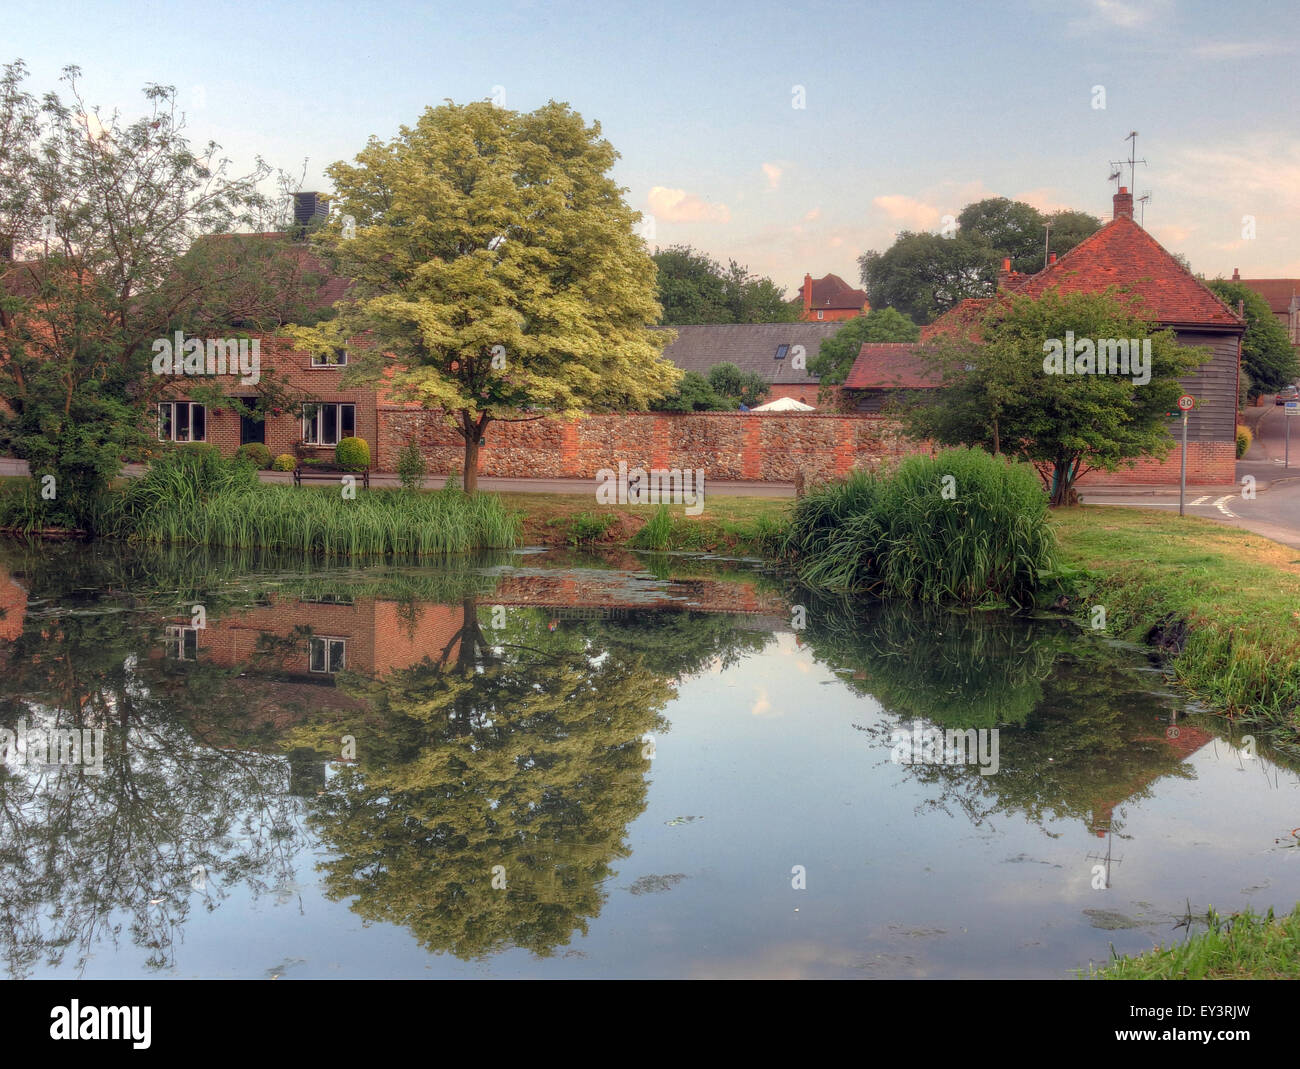 L'étang, East Ilsley, Newbury, West Berkshire, Angleterre, ROYAUME-UNI, RG20 7LP Banque D'Images